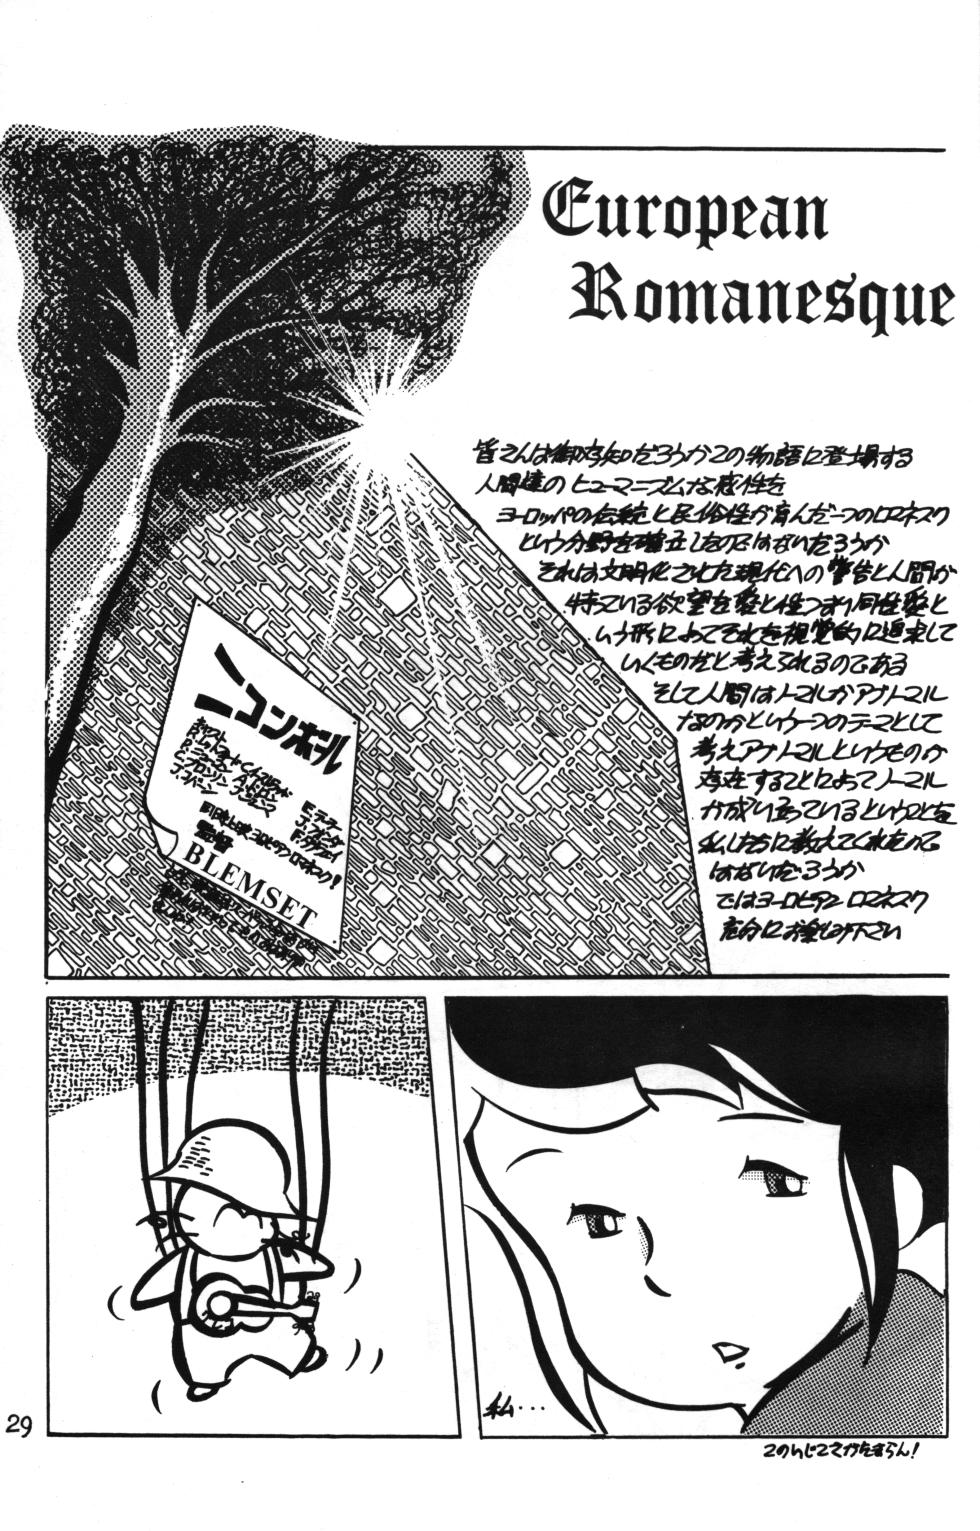 [AVC 2] Rana-chan World 3 (Alps no Shoujo Heidi) - Page 29